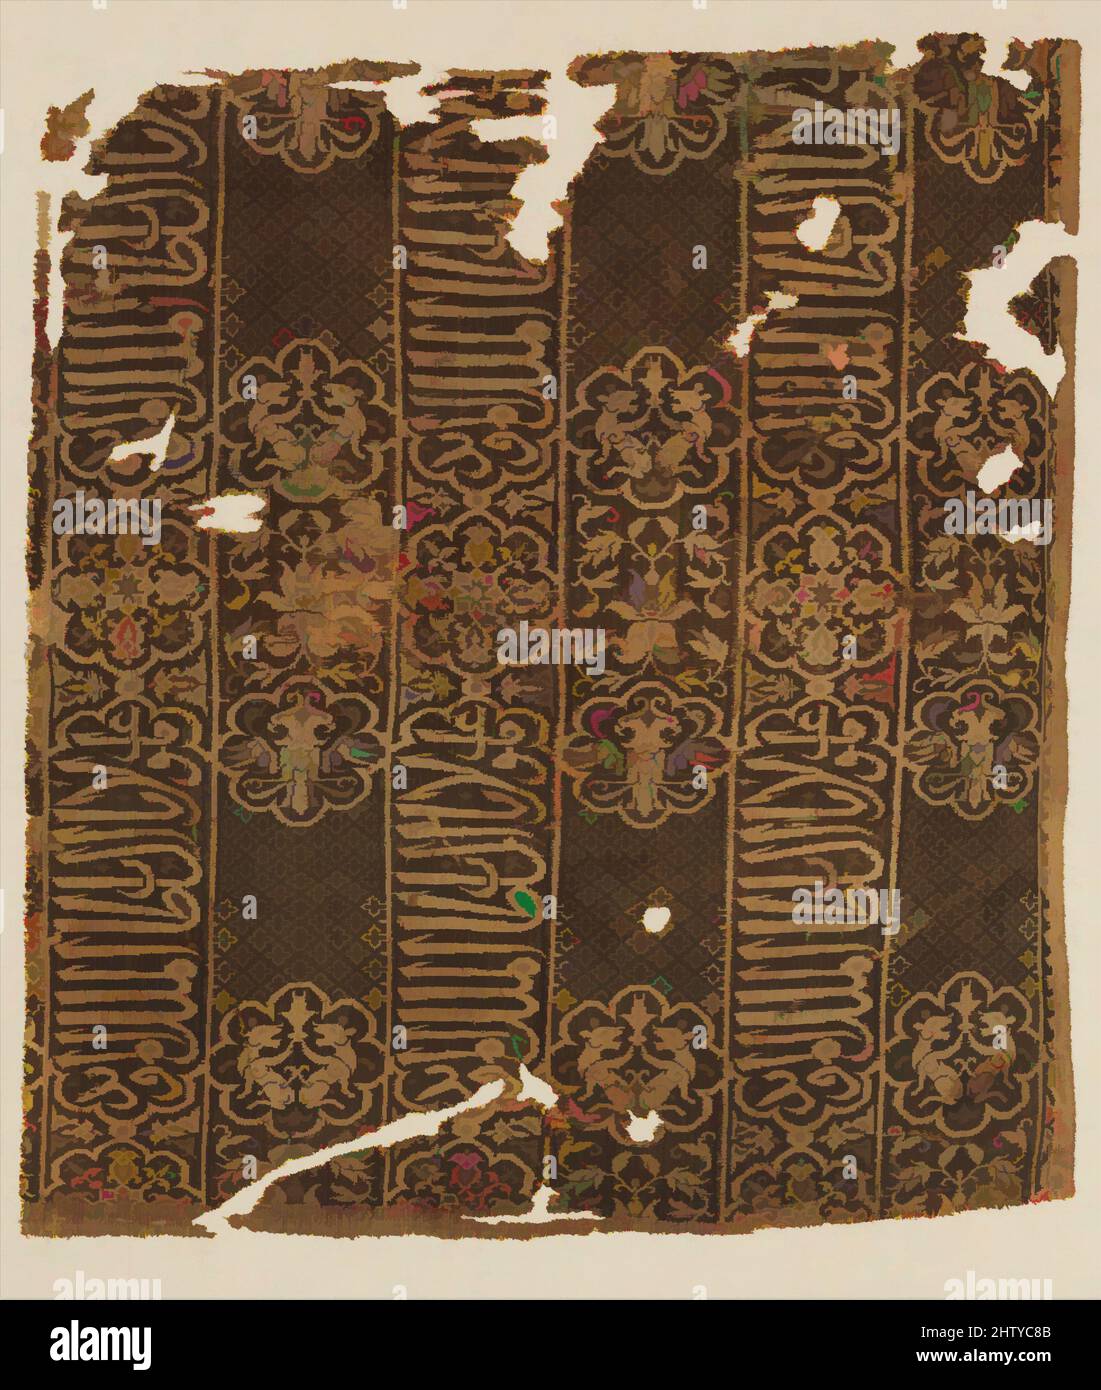 Art inspiré par fragment d'un manteau, début du 14th siècle, attribué à l'Egypte, soie; double tissage, H. 20 1/4 po (51,4 cm), textiles-Woven, l'inscription arabe répétée dans le script de thuluth est traduite comme «gloire à notre maître le Sultan al Malik al Mu’ayyad.» Cela se réfère probablement à, les œuvres classiques modernisées par Artotop avec un peu de modernité. Formes, couleur et valeur, impact visuel accrocheur sur l'art émotions par la liberté d'œuvres d'art d'une manière contemporaine. Un message intemporel qui cherche une nouvelle direction créative. Artistes qui se tournent vers le support numérique et créent le NFT Artotop Banque D'Images